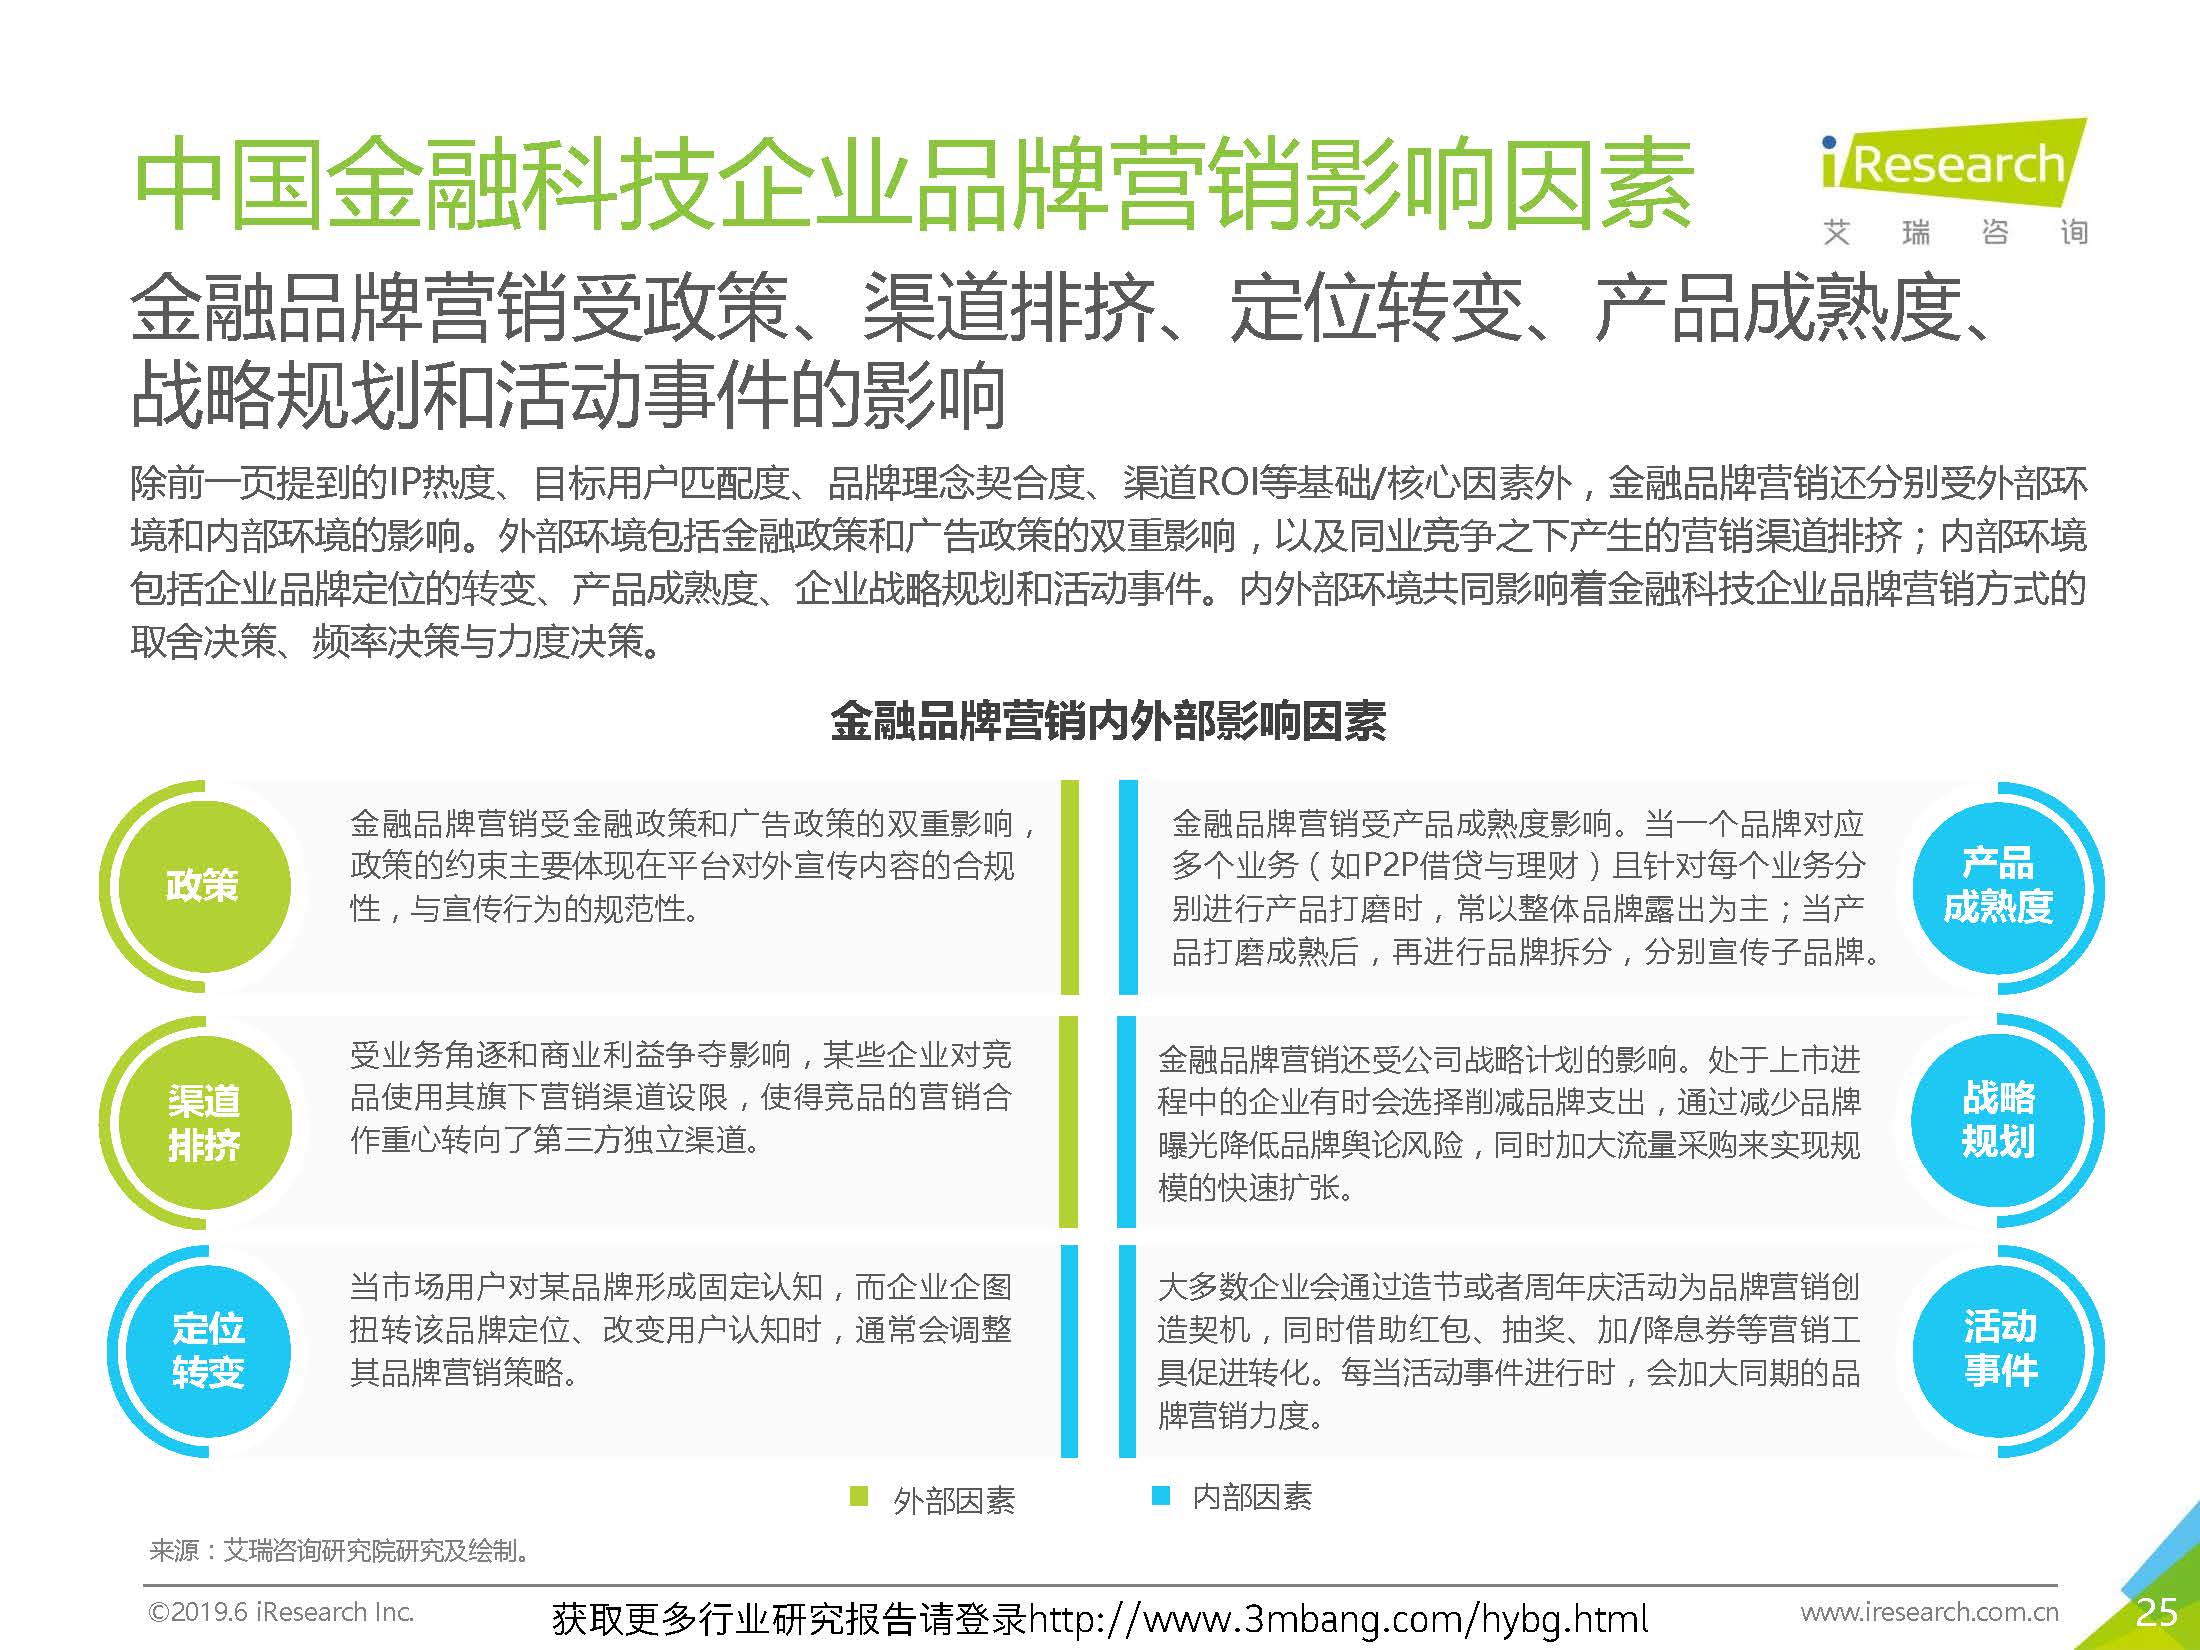 艾瑞：2019年-静待惊蛰-中国金融科技企业品牌营销研究报告(37页)_页面_25.jpg